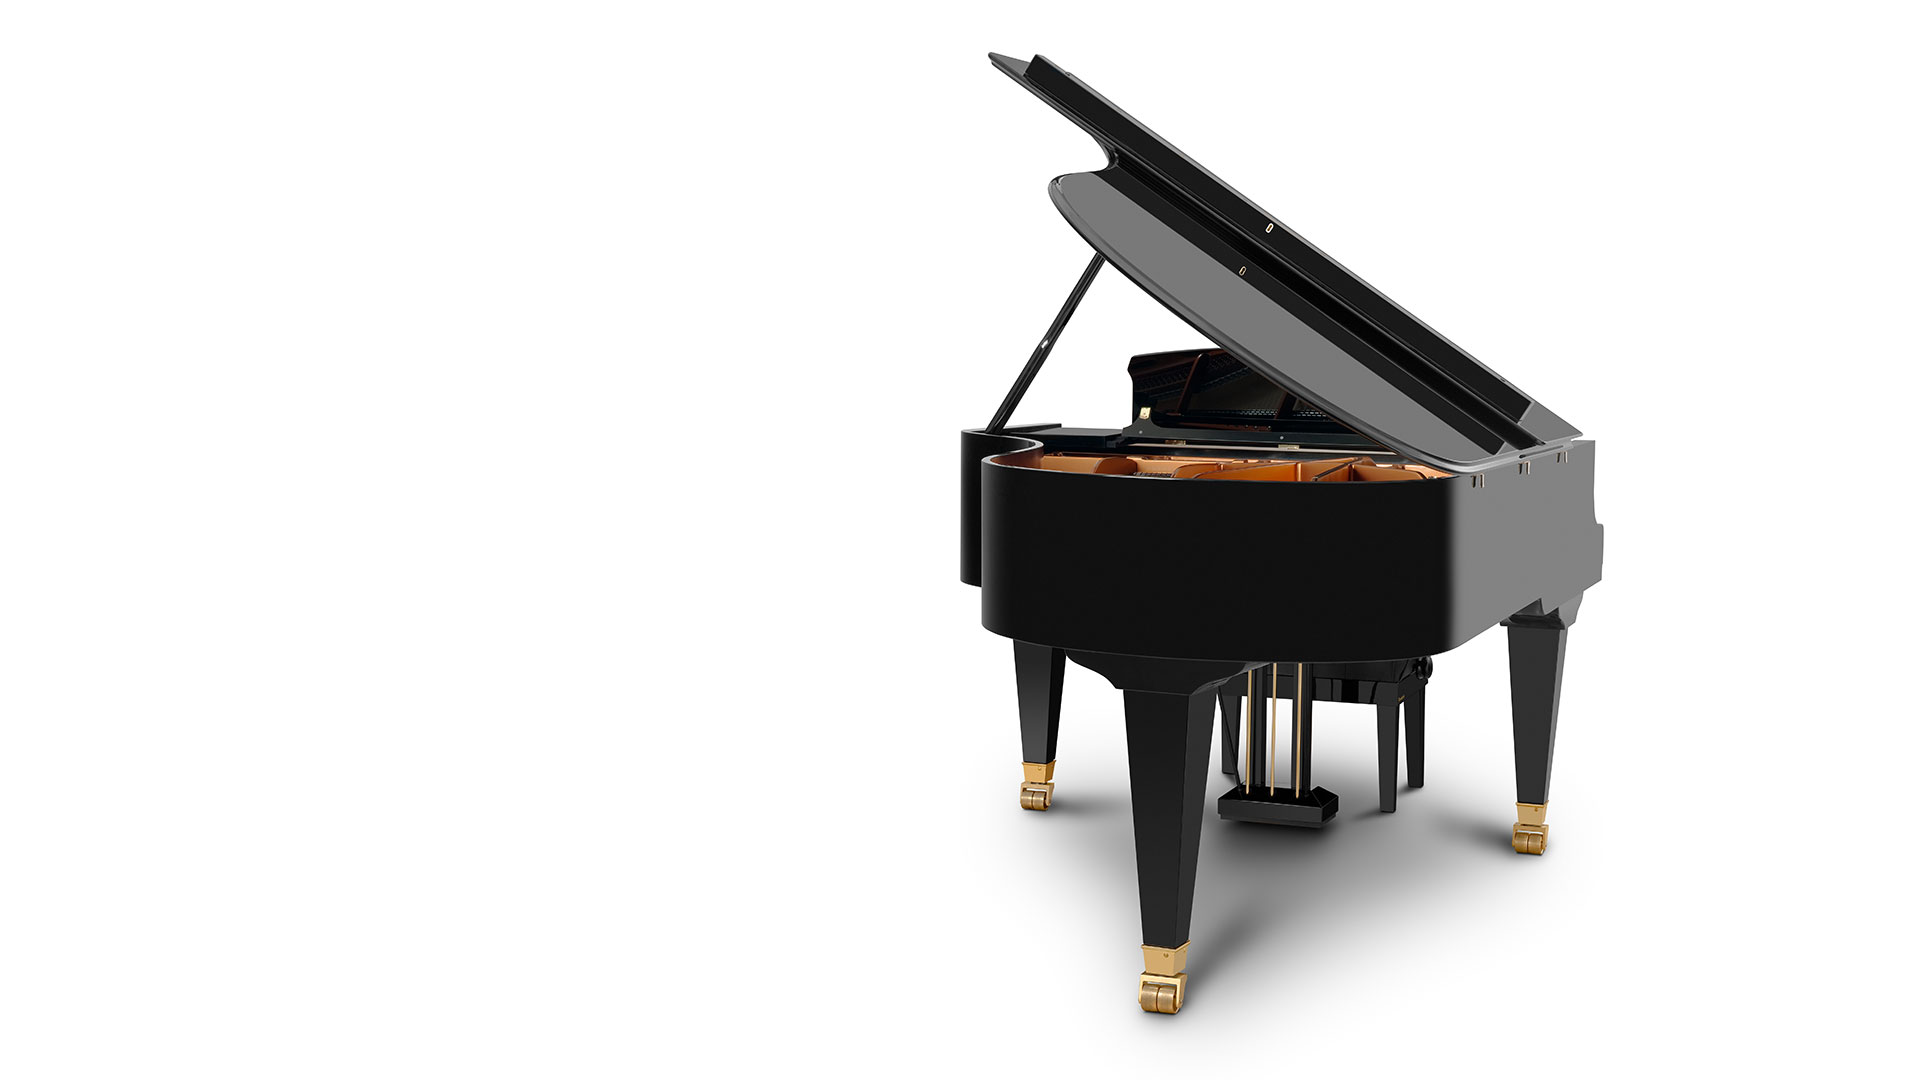 Bosendorfer piano Model 200 grand piano